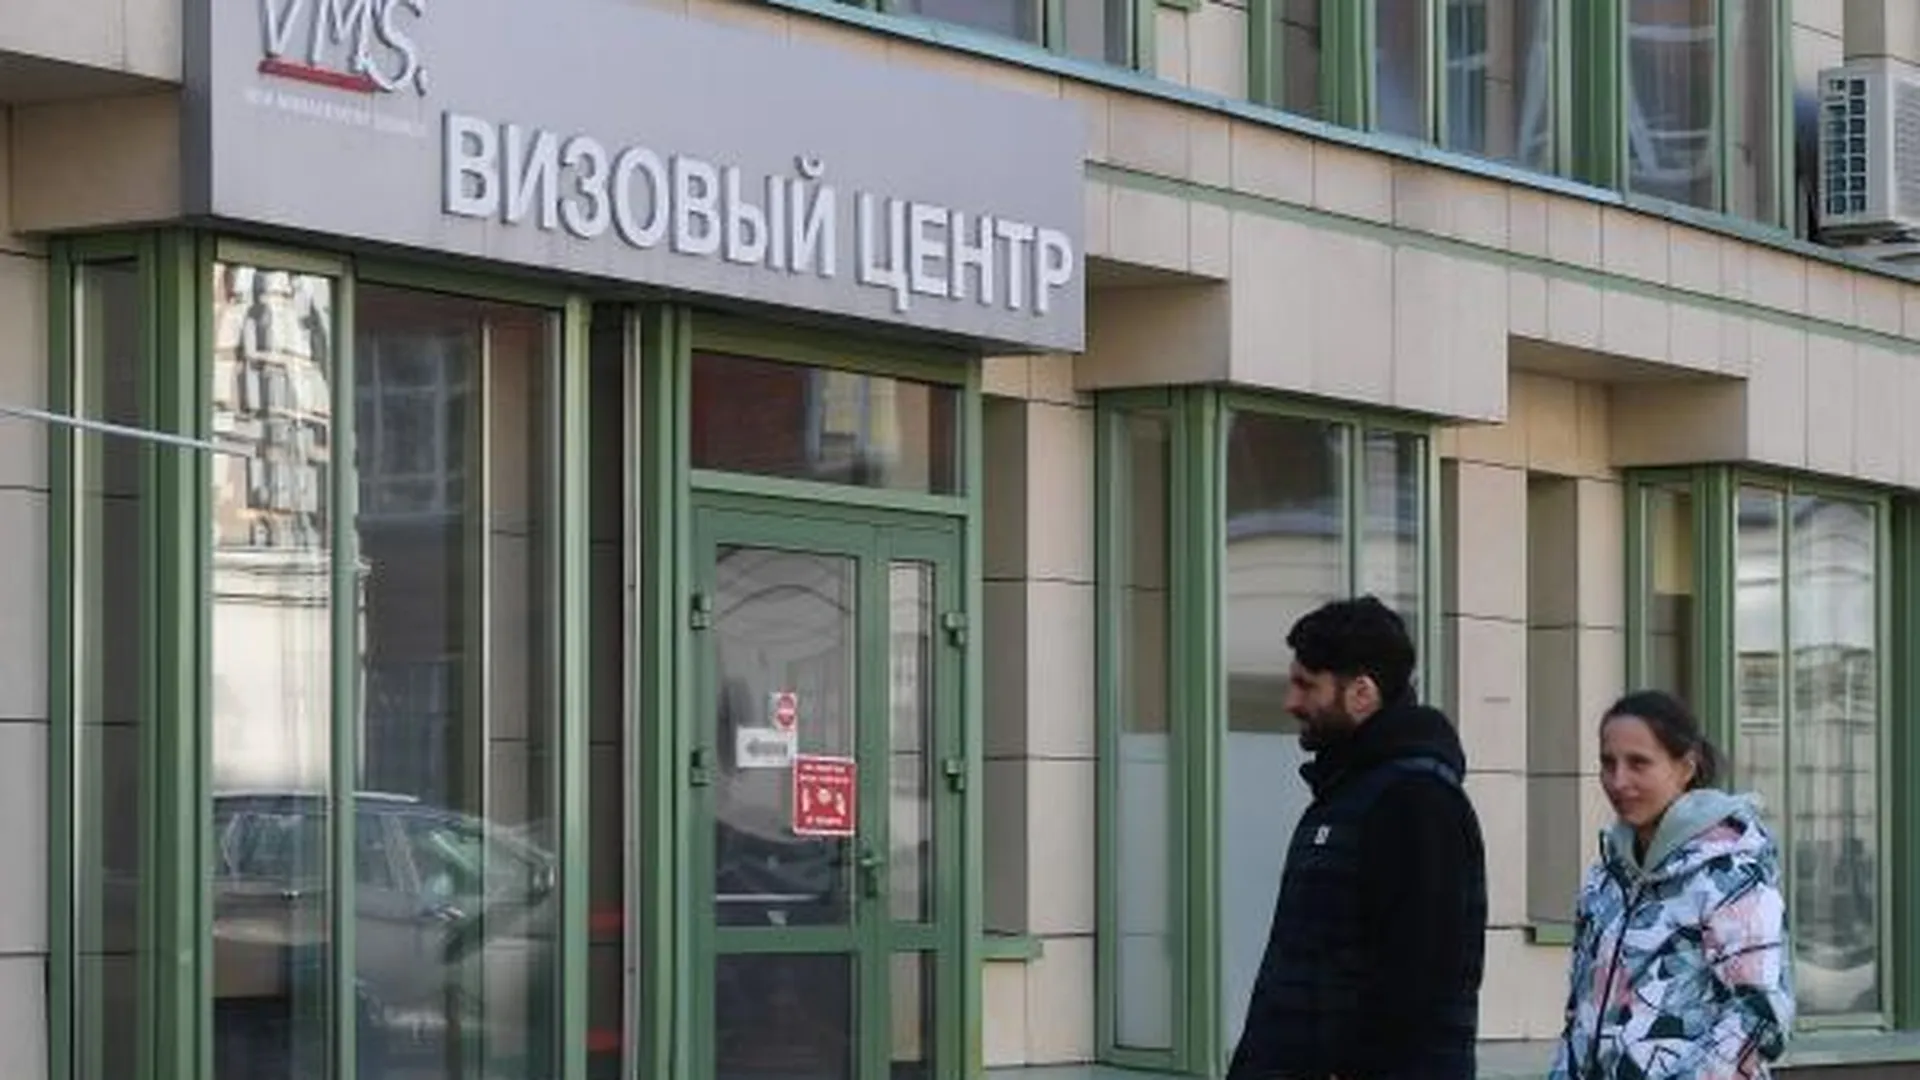 Визовый центр Италии в Москве начал прием документов на туристические визы